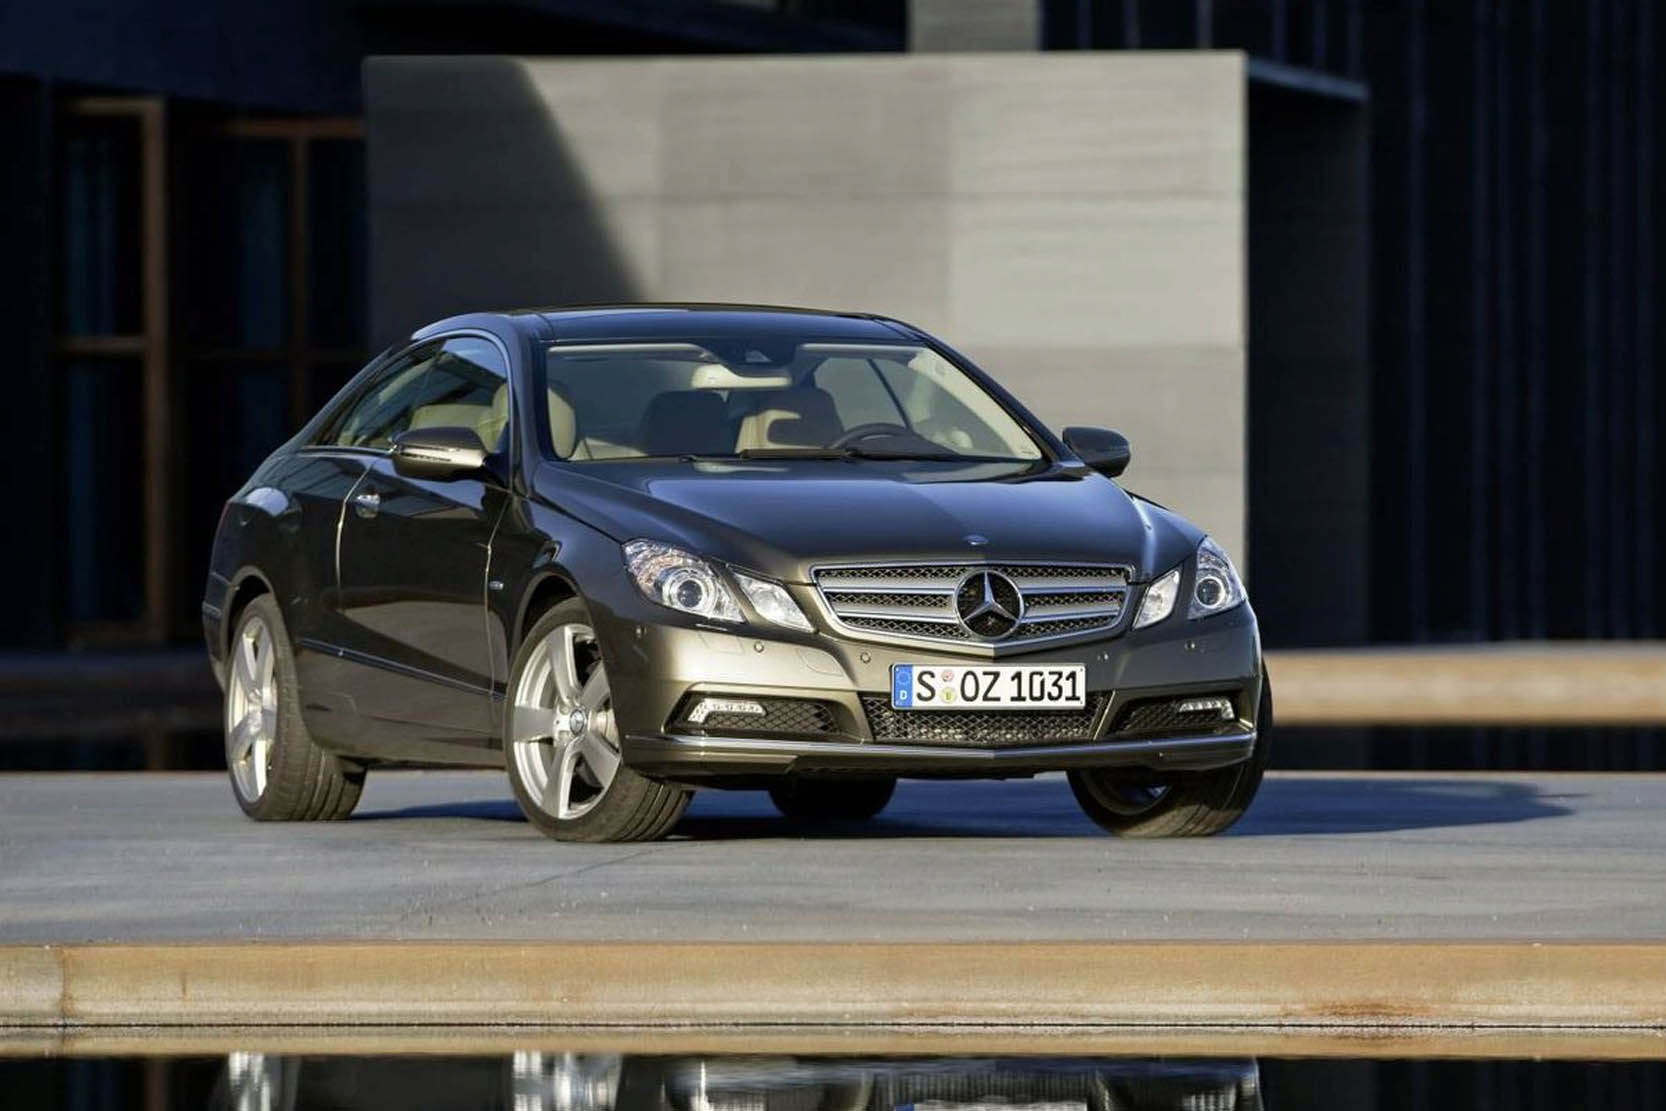 Image principale de l'actu: Mercedes classe e coupe cx 0 24 